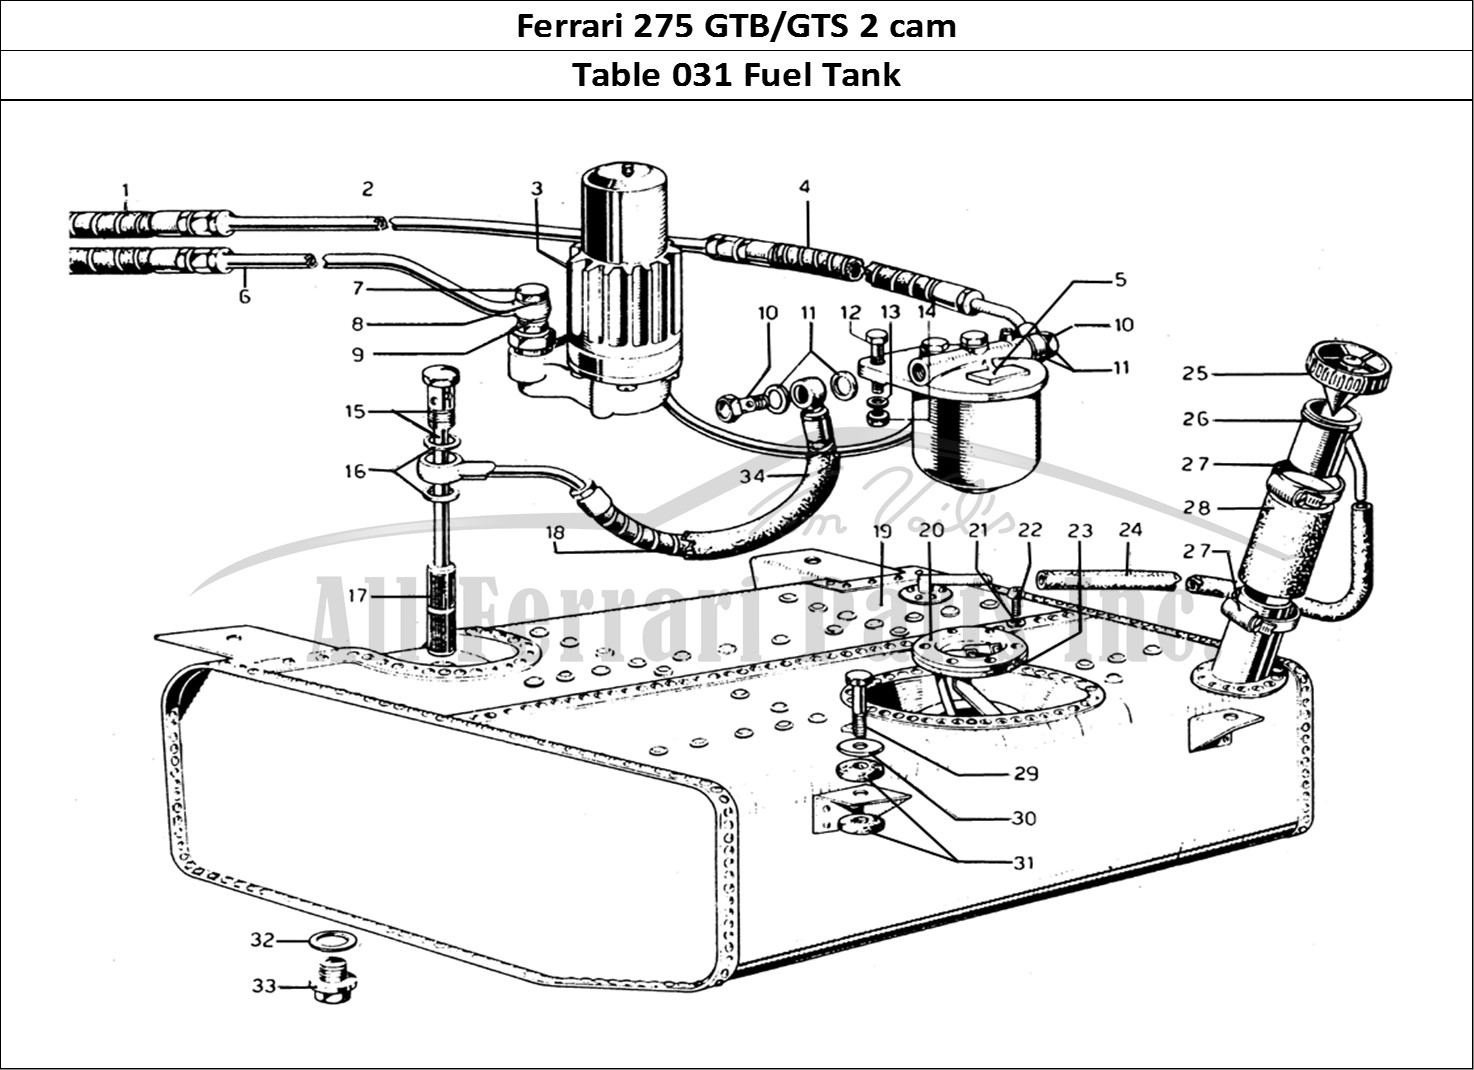 Ferrari Parts Ferrari 275 GTB/GTS 2 cam Page 031 Fuel Tank